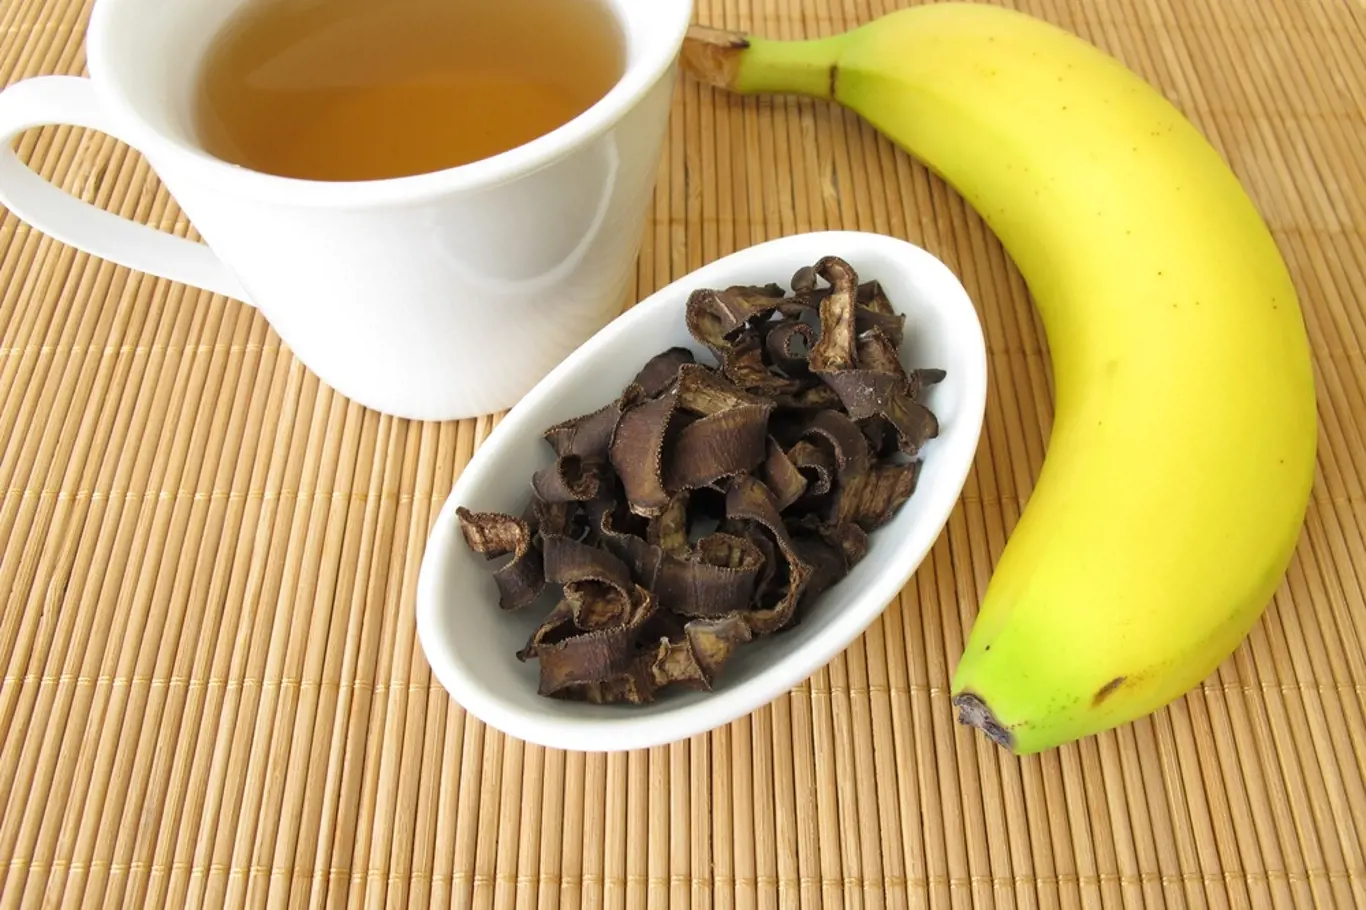 Čaj z banánových slupek je elixírem zdraví